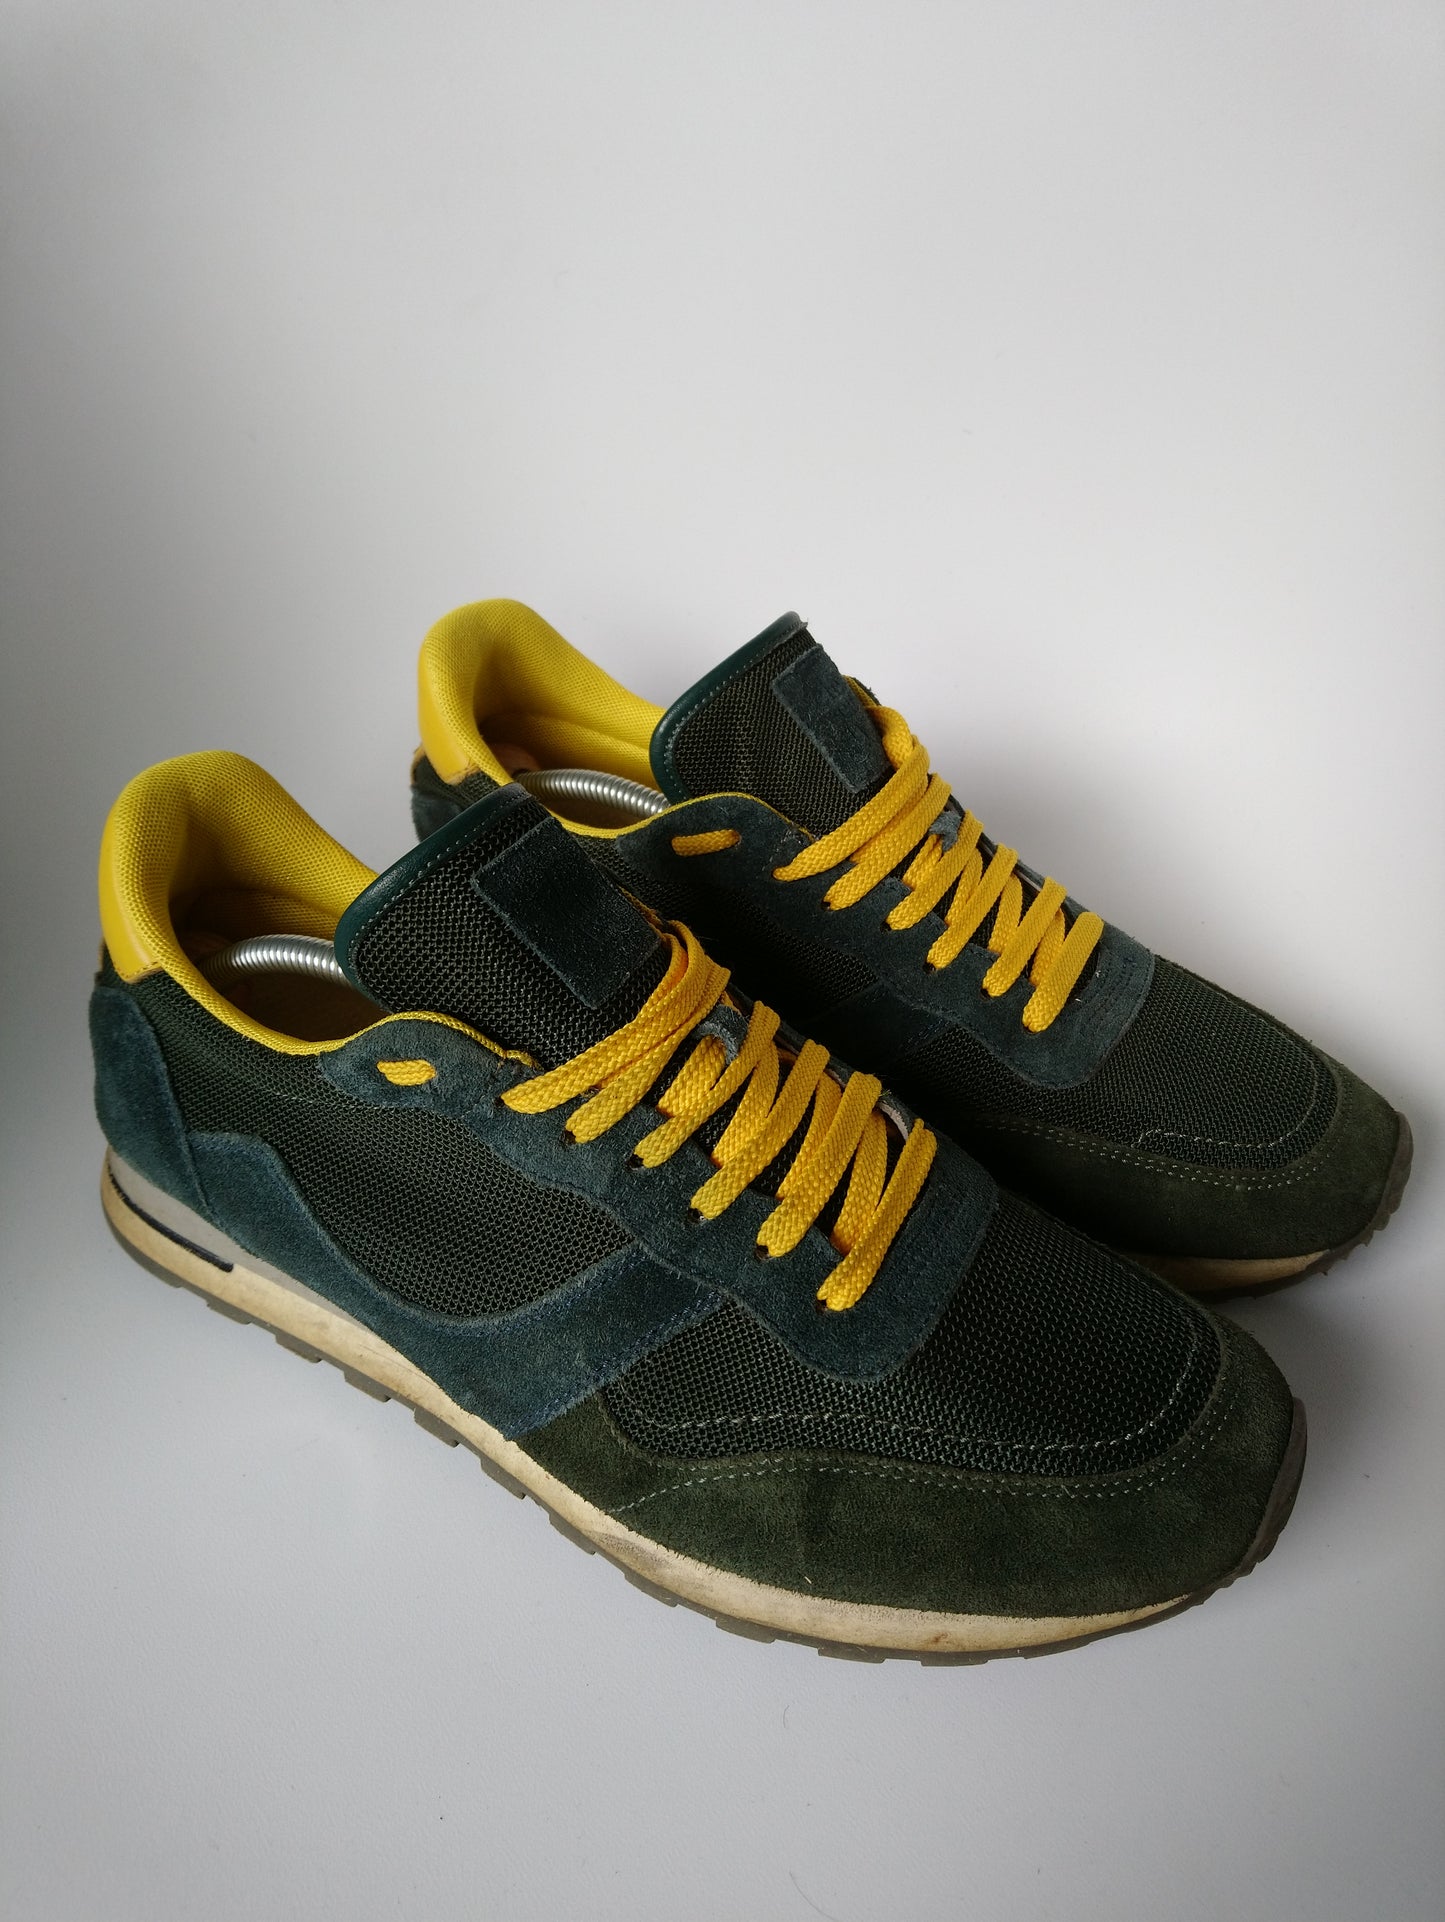 Sneaker undici / 11ty. Colorato giallo verde scuro. Taglia 43.